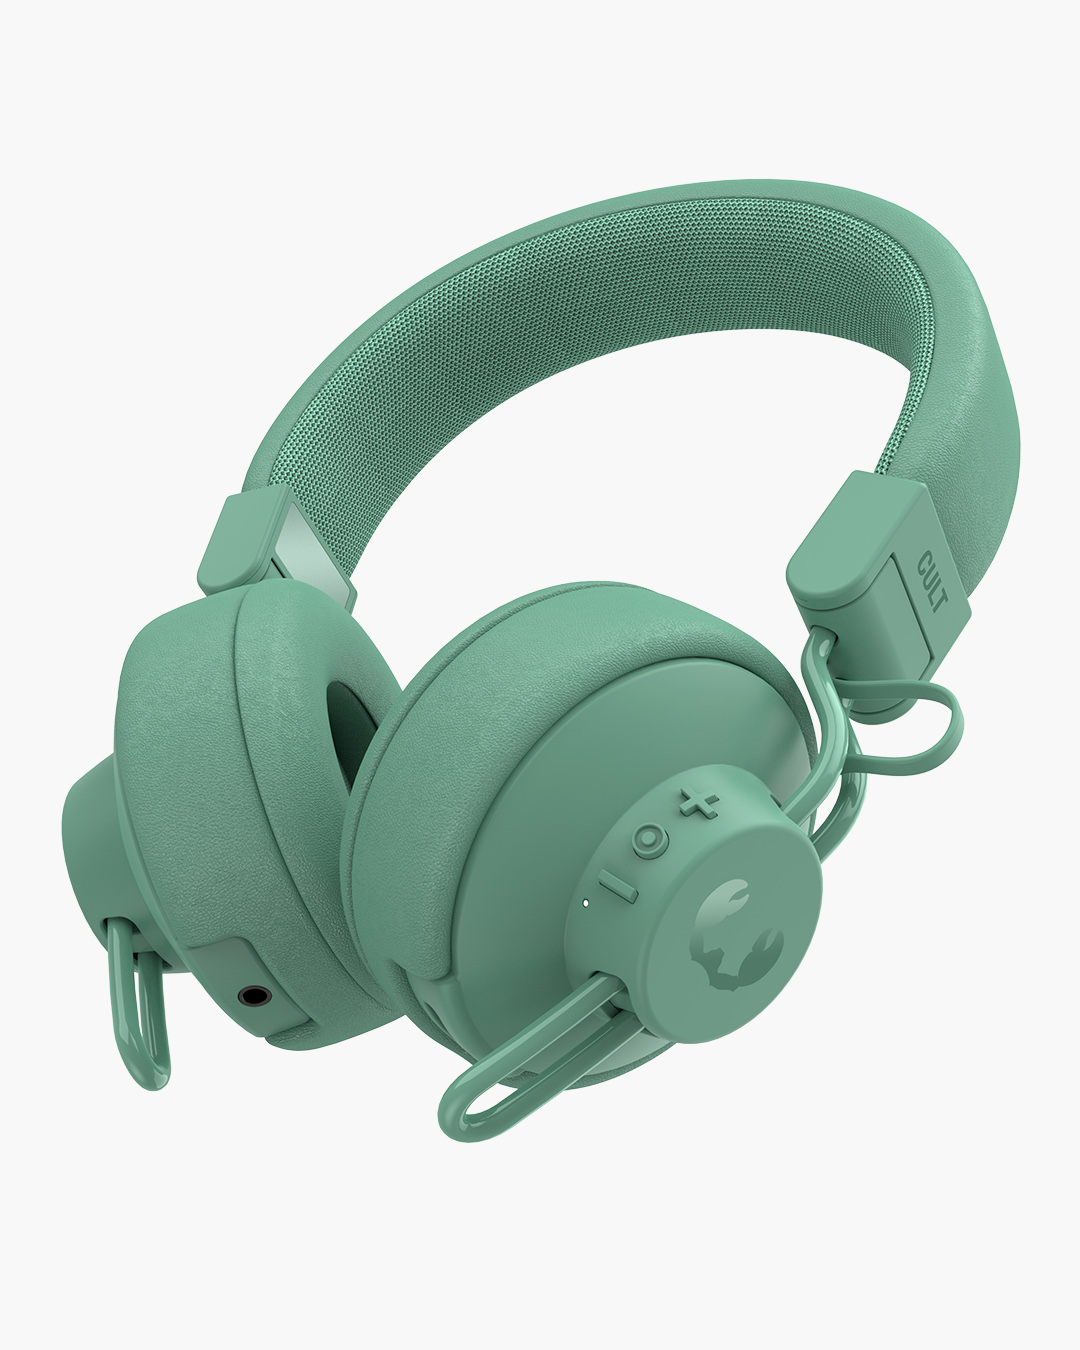 Fresh 'n Rebel - Cult - Wireless on-ear headphones - Misty Mint